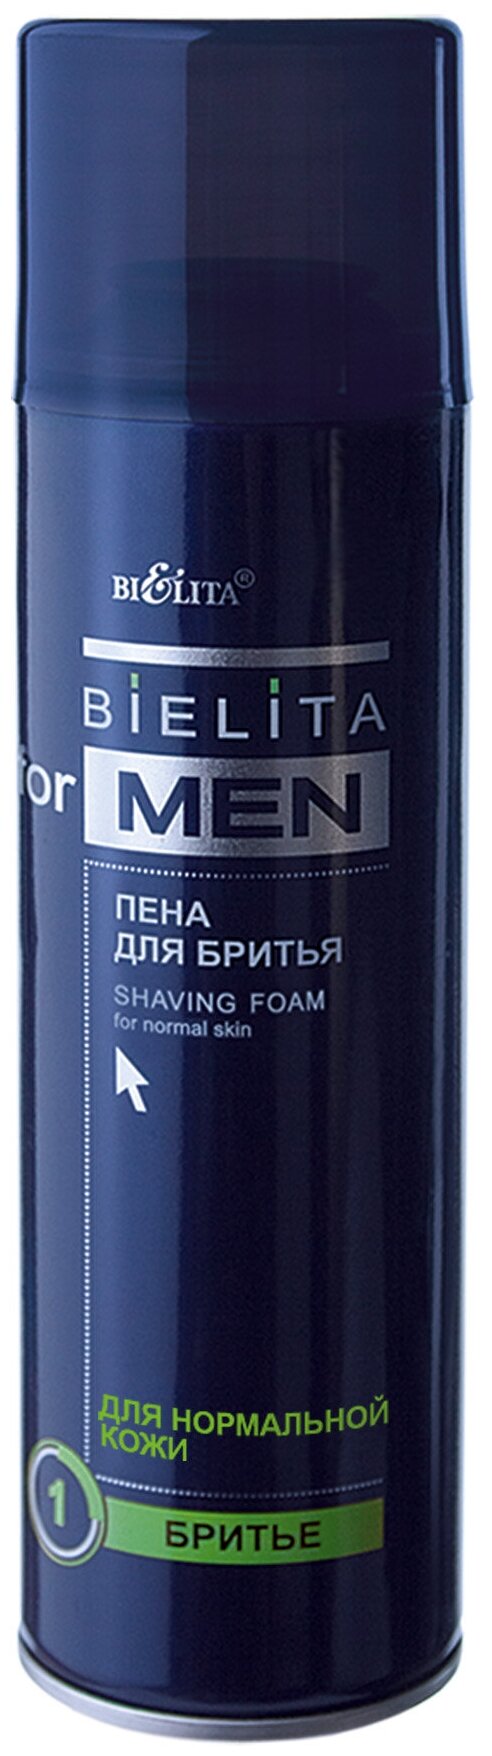 Пена для бритья для нормальной кожи Bielita, 250 мл